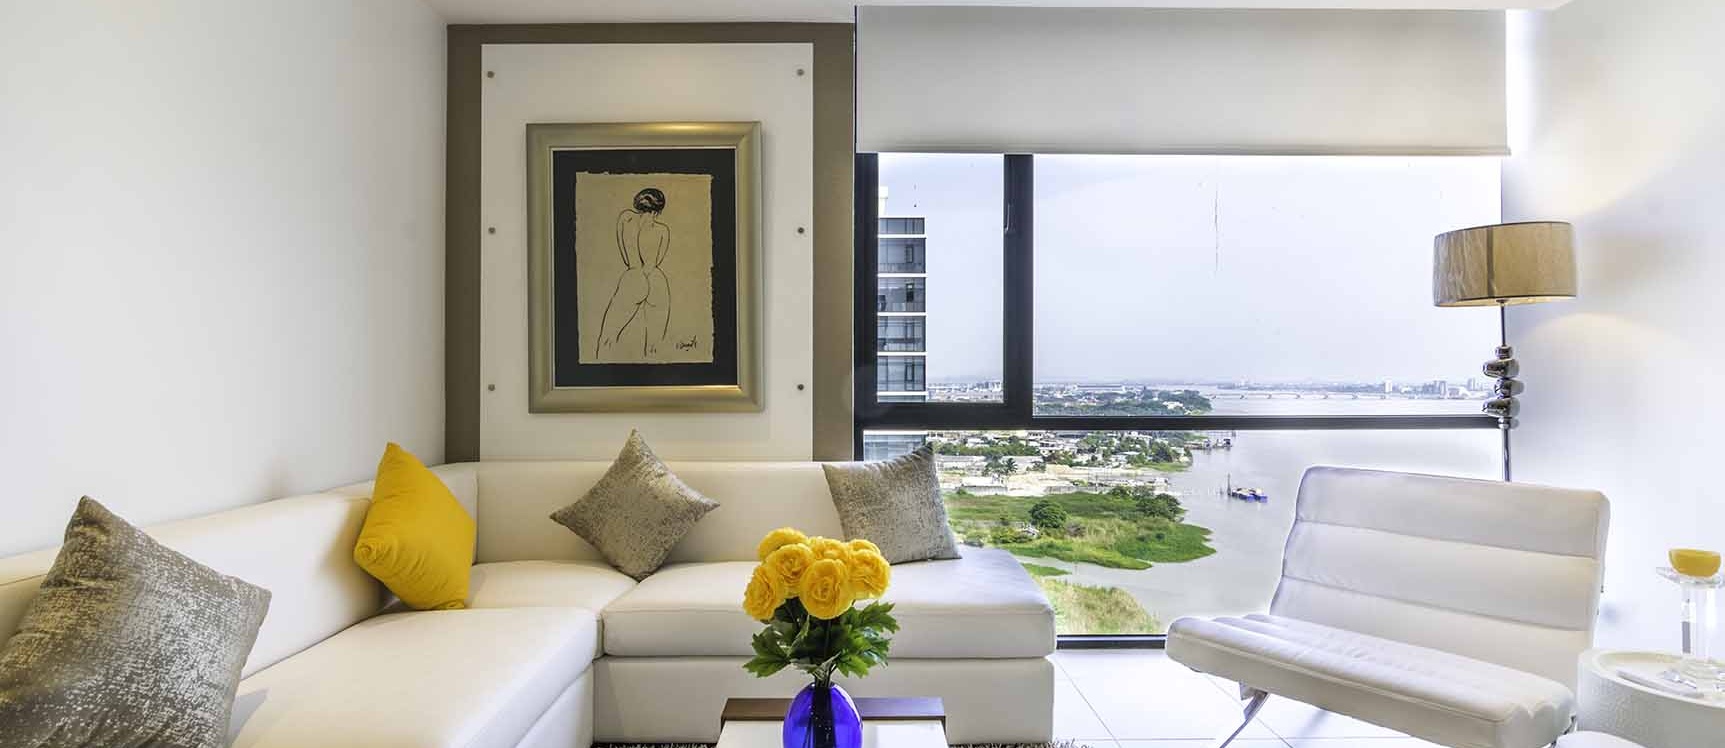 GeoBienes - Suite en alquiler en Bellini I centro de Guayaquil - Plusvalia Guayaquil Casas de venta y alquiler Inmobiliaria Ecuador